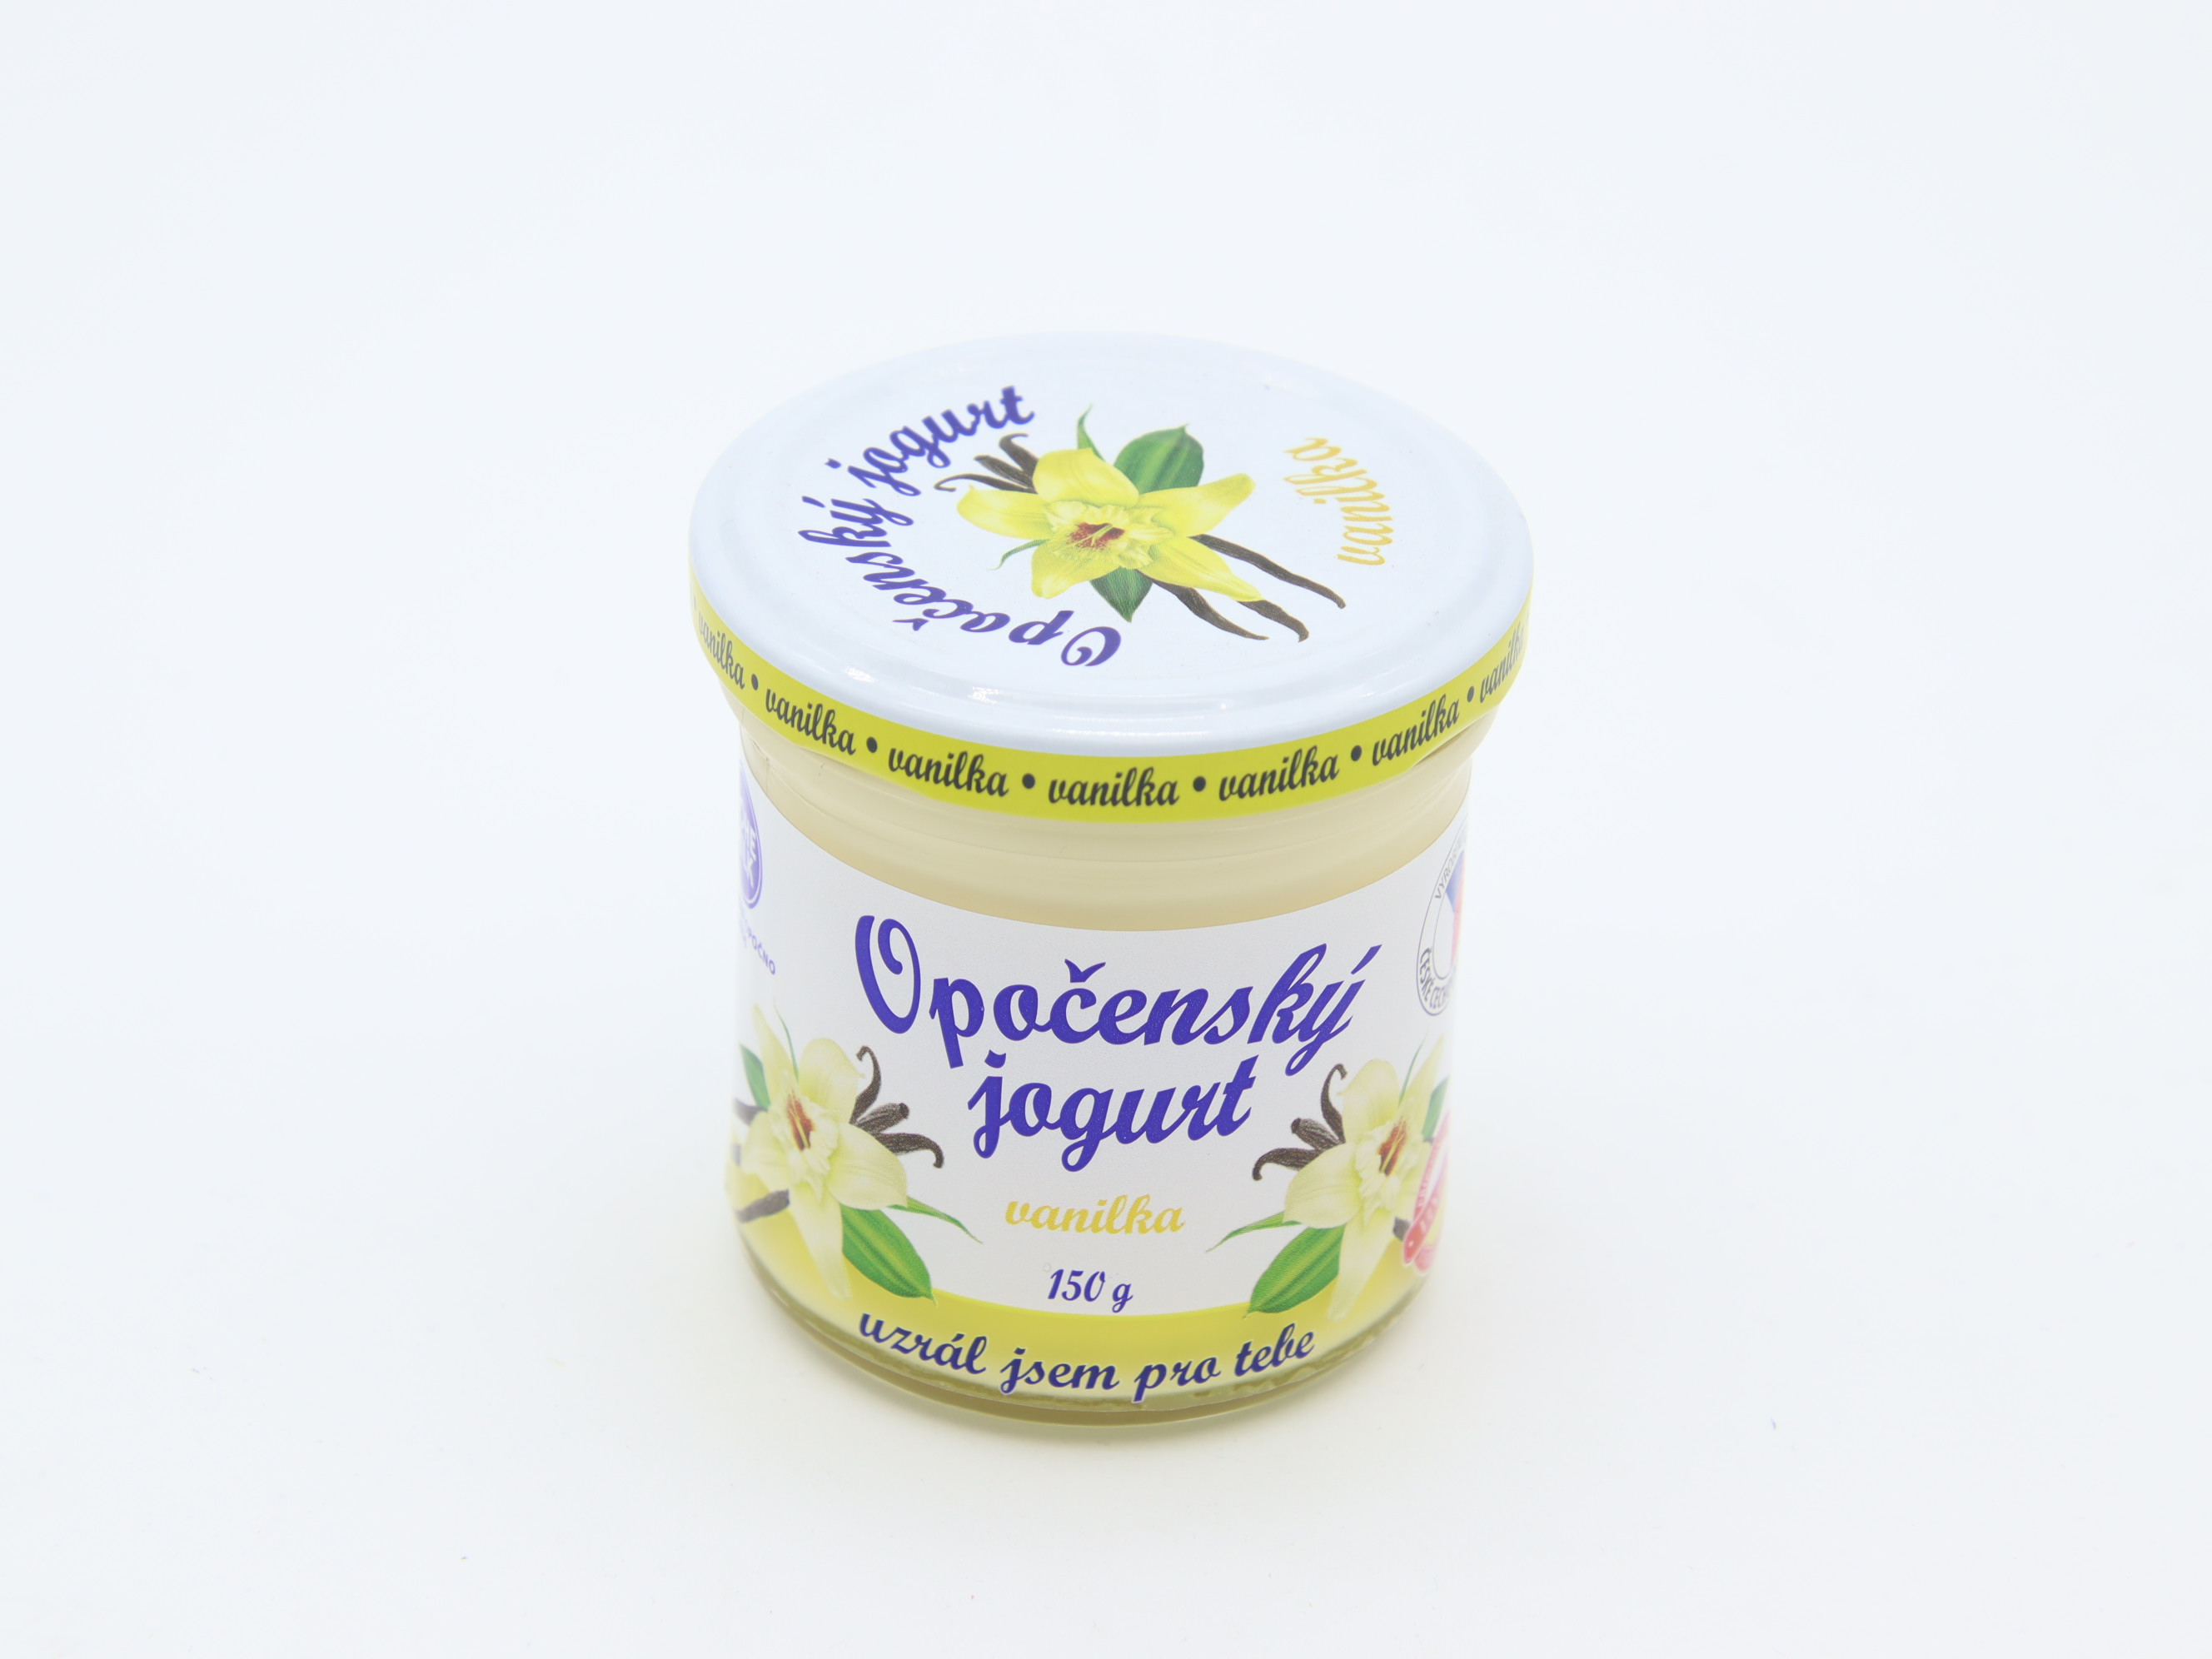 Opočenský jogurt 150 g: Vanilka